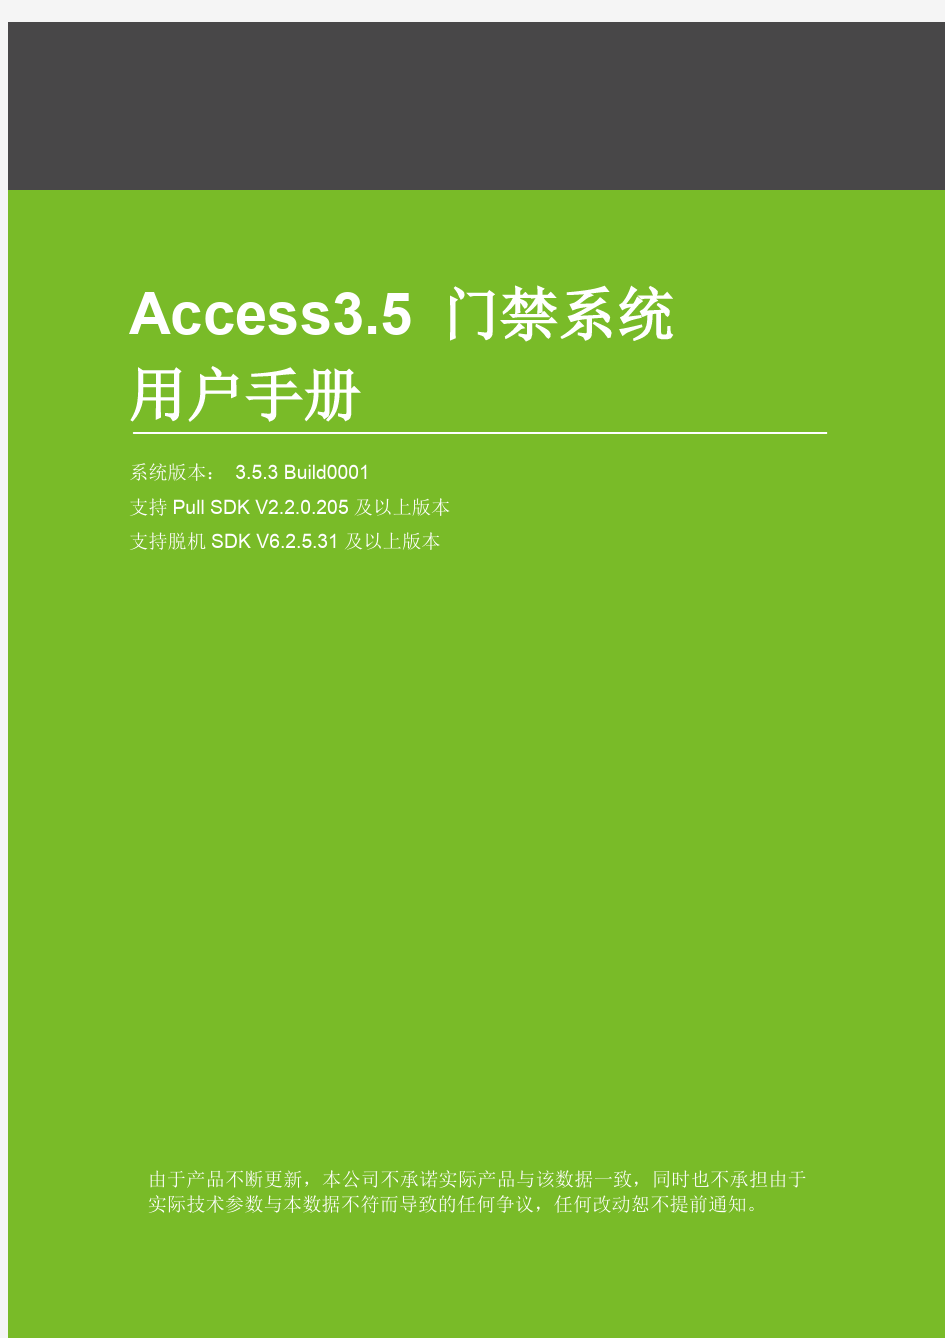 Access3.5门禁系统用户手册V2.2.1